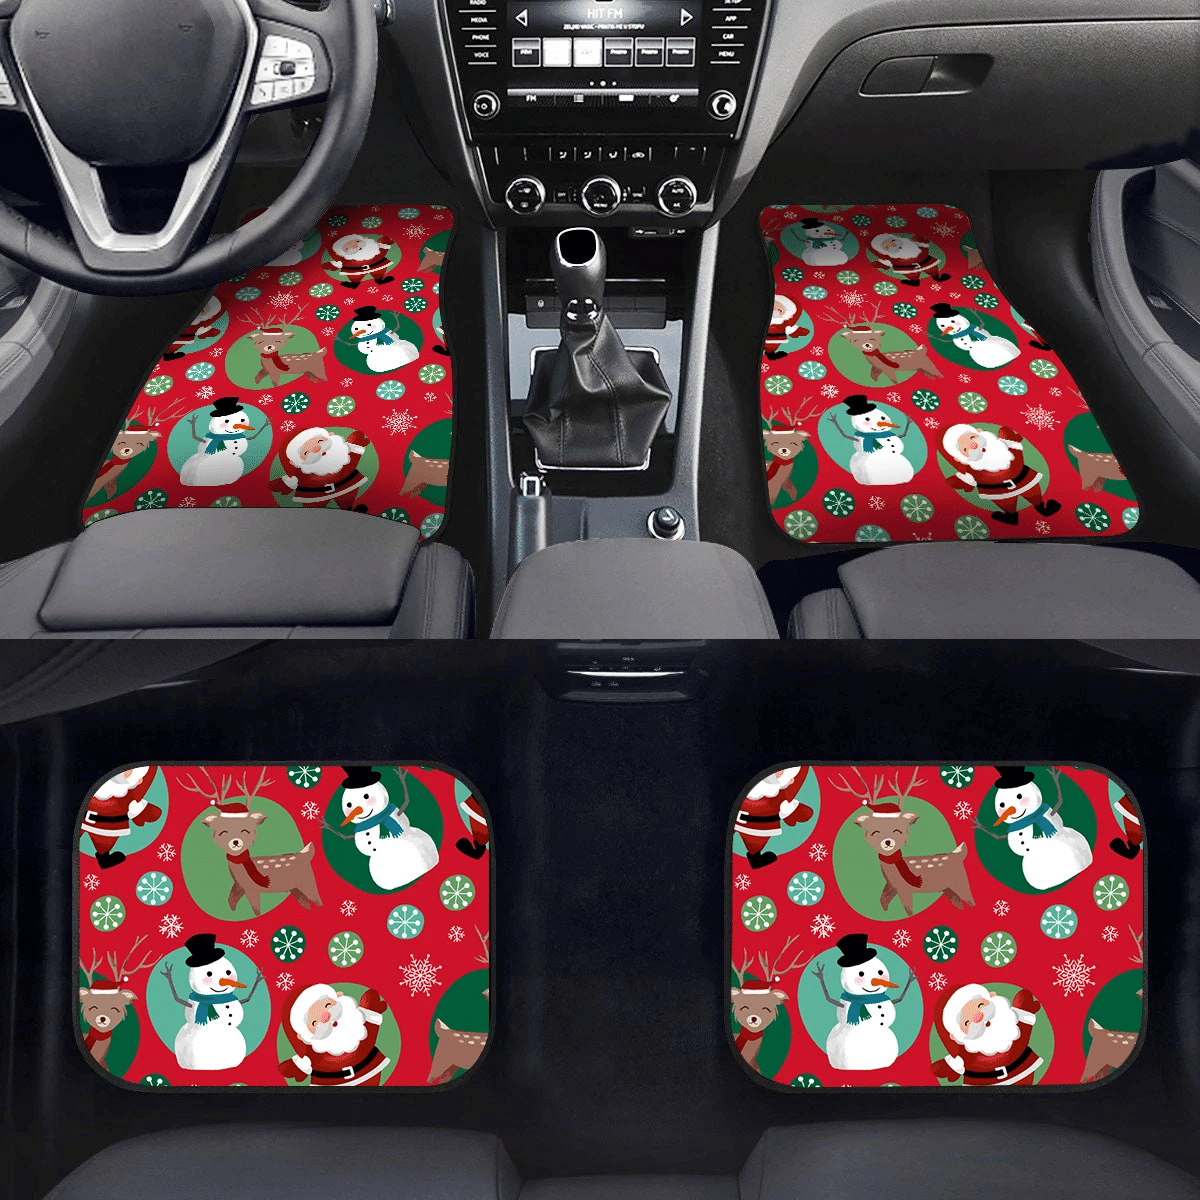 Christmas Winter Circled Reindeer Santa Claus And Snowman Car Mats Car Floor Mats